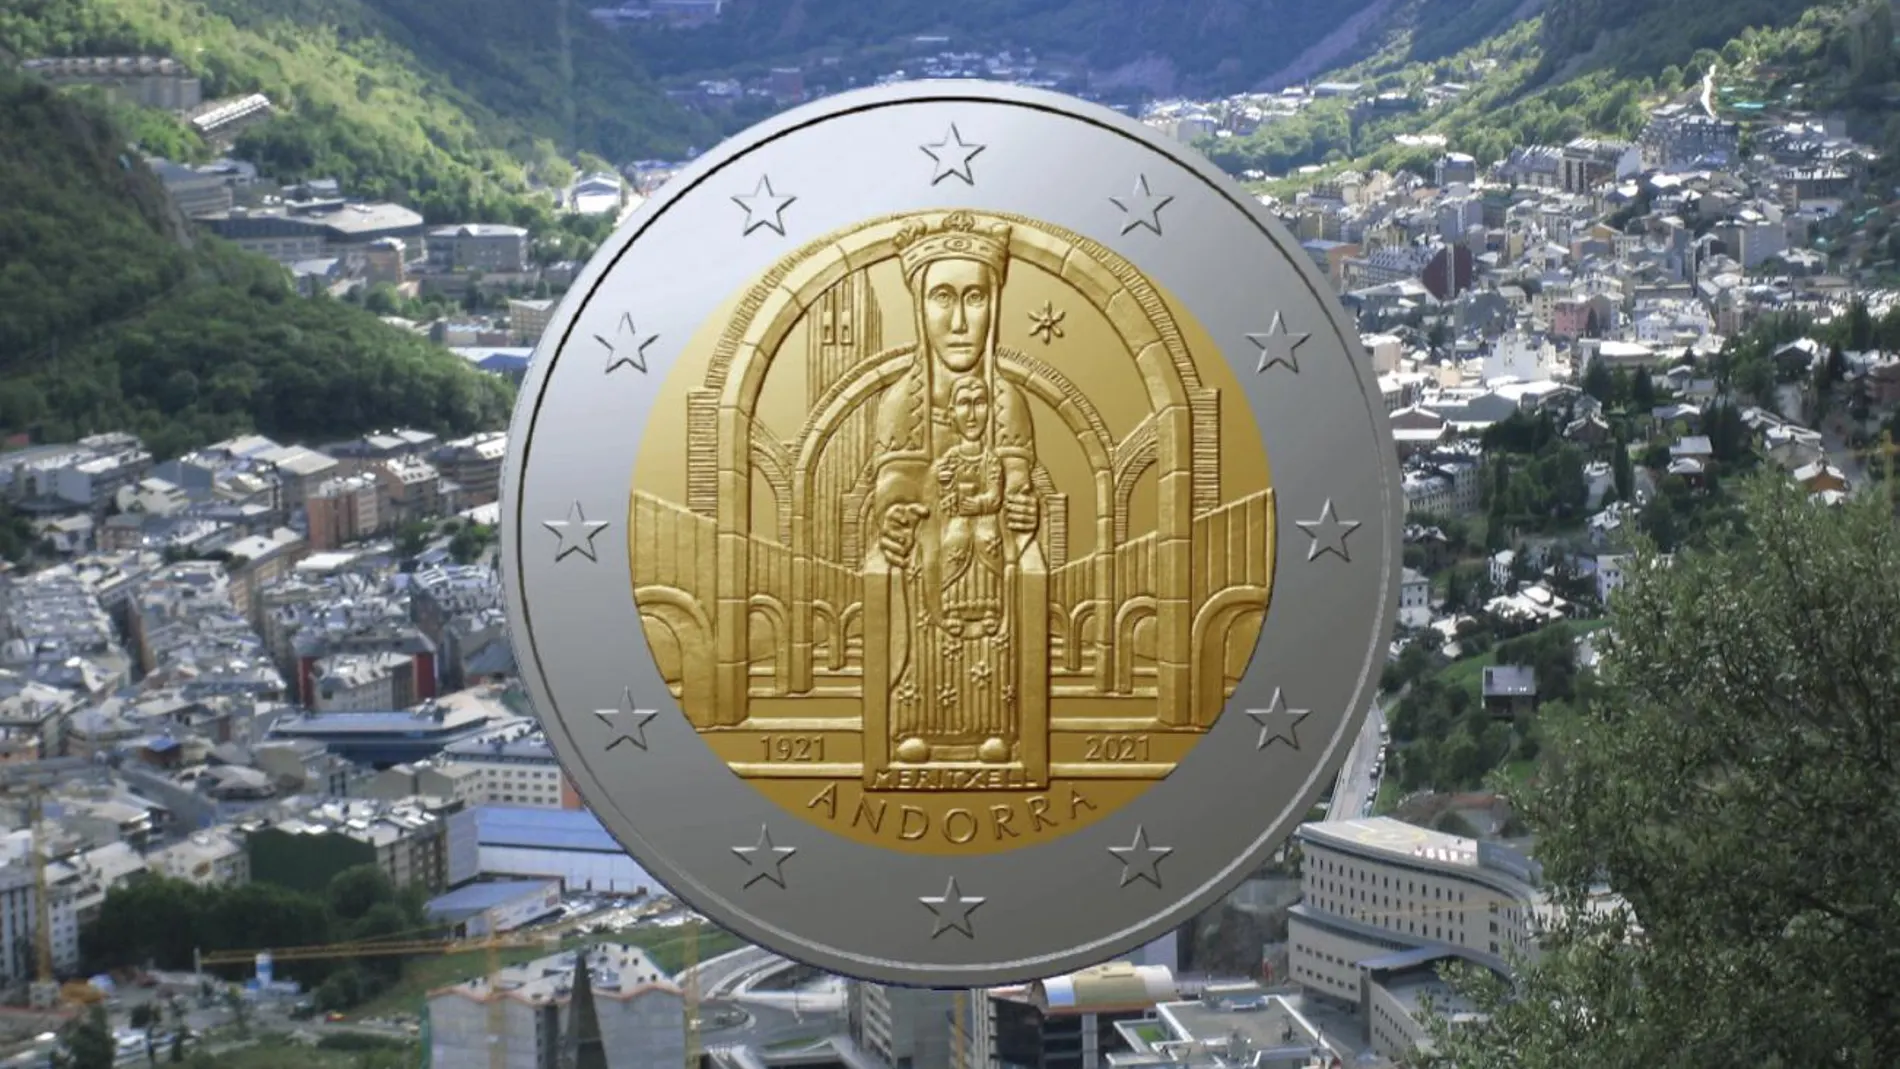 La nueva moneda de Andorra enfurece a las redes: sí, es lo que parece